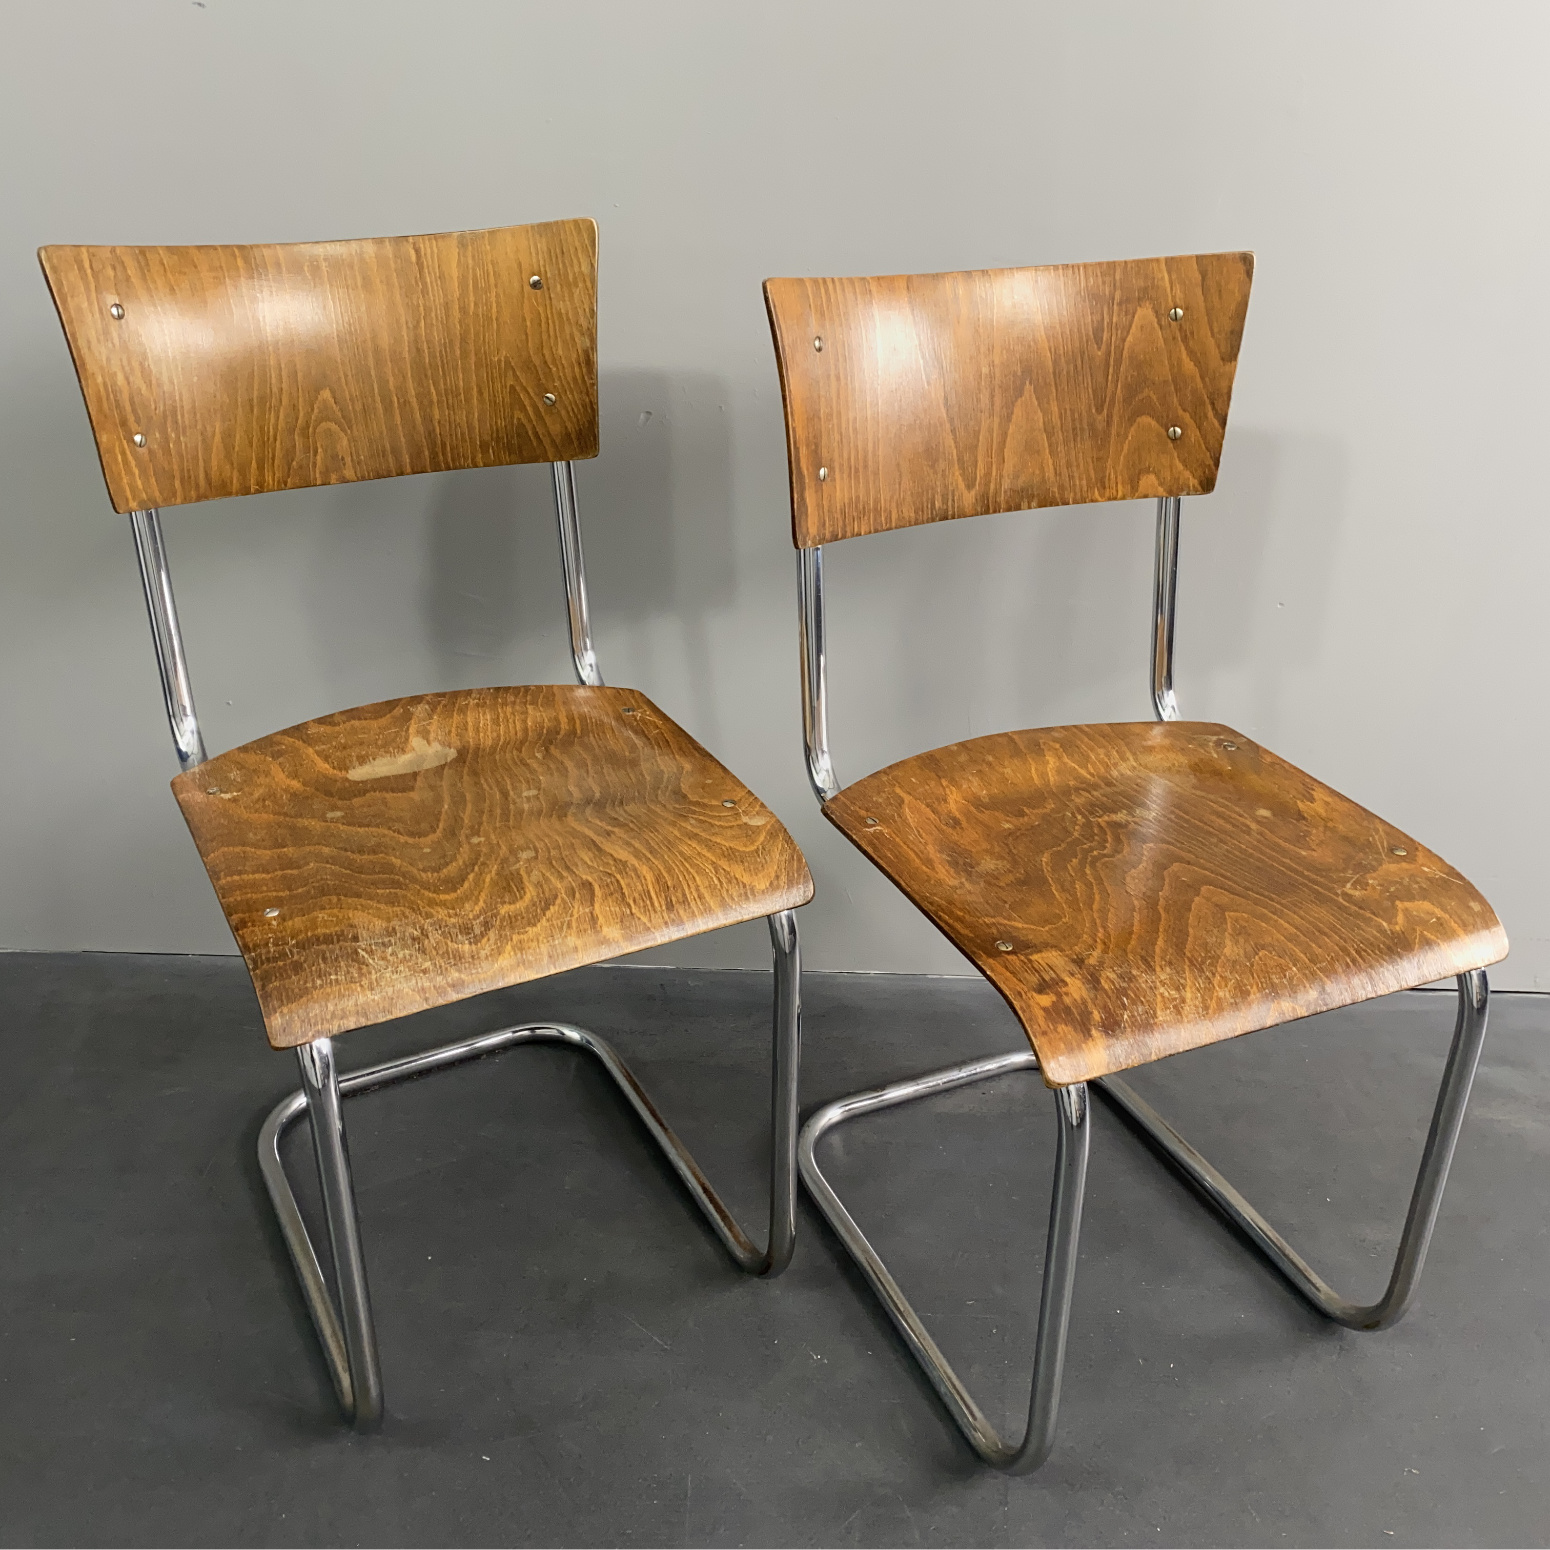 Paar B 43 Bauhaus Freischwinger Stahlrohr Stühle von Mart Stam für Robert Slezak in Thonet-Mundus Lizenz, Tschechoslowakei, 1932